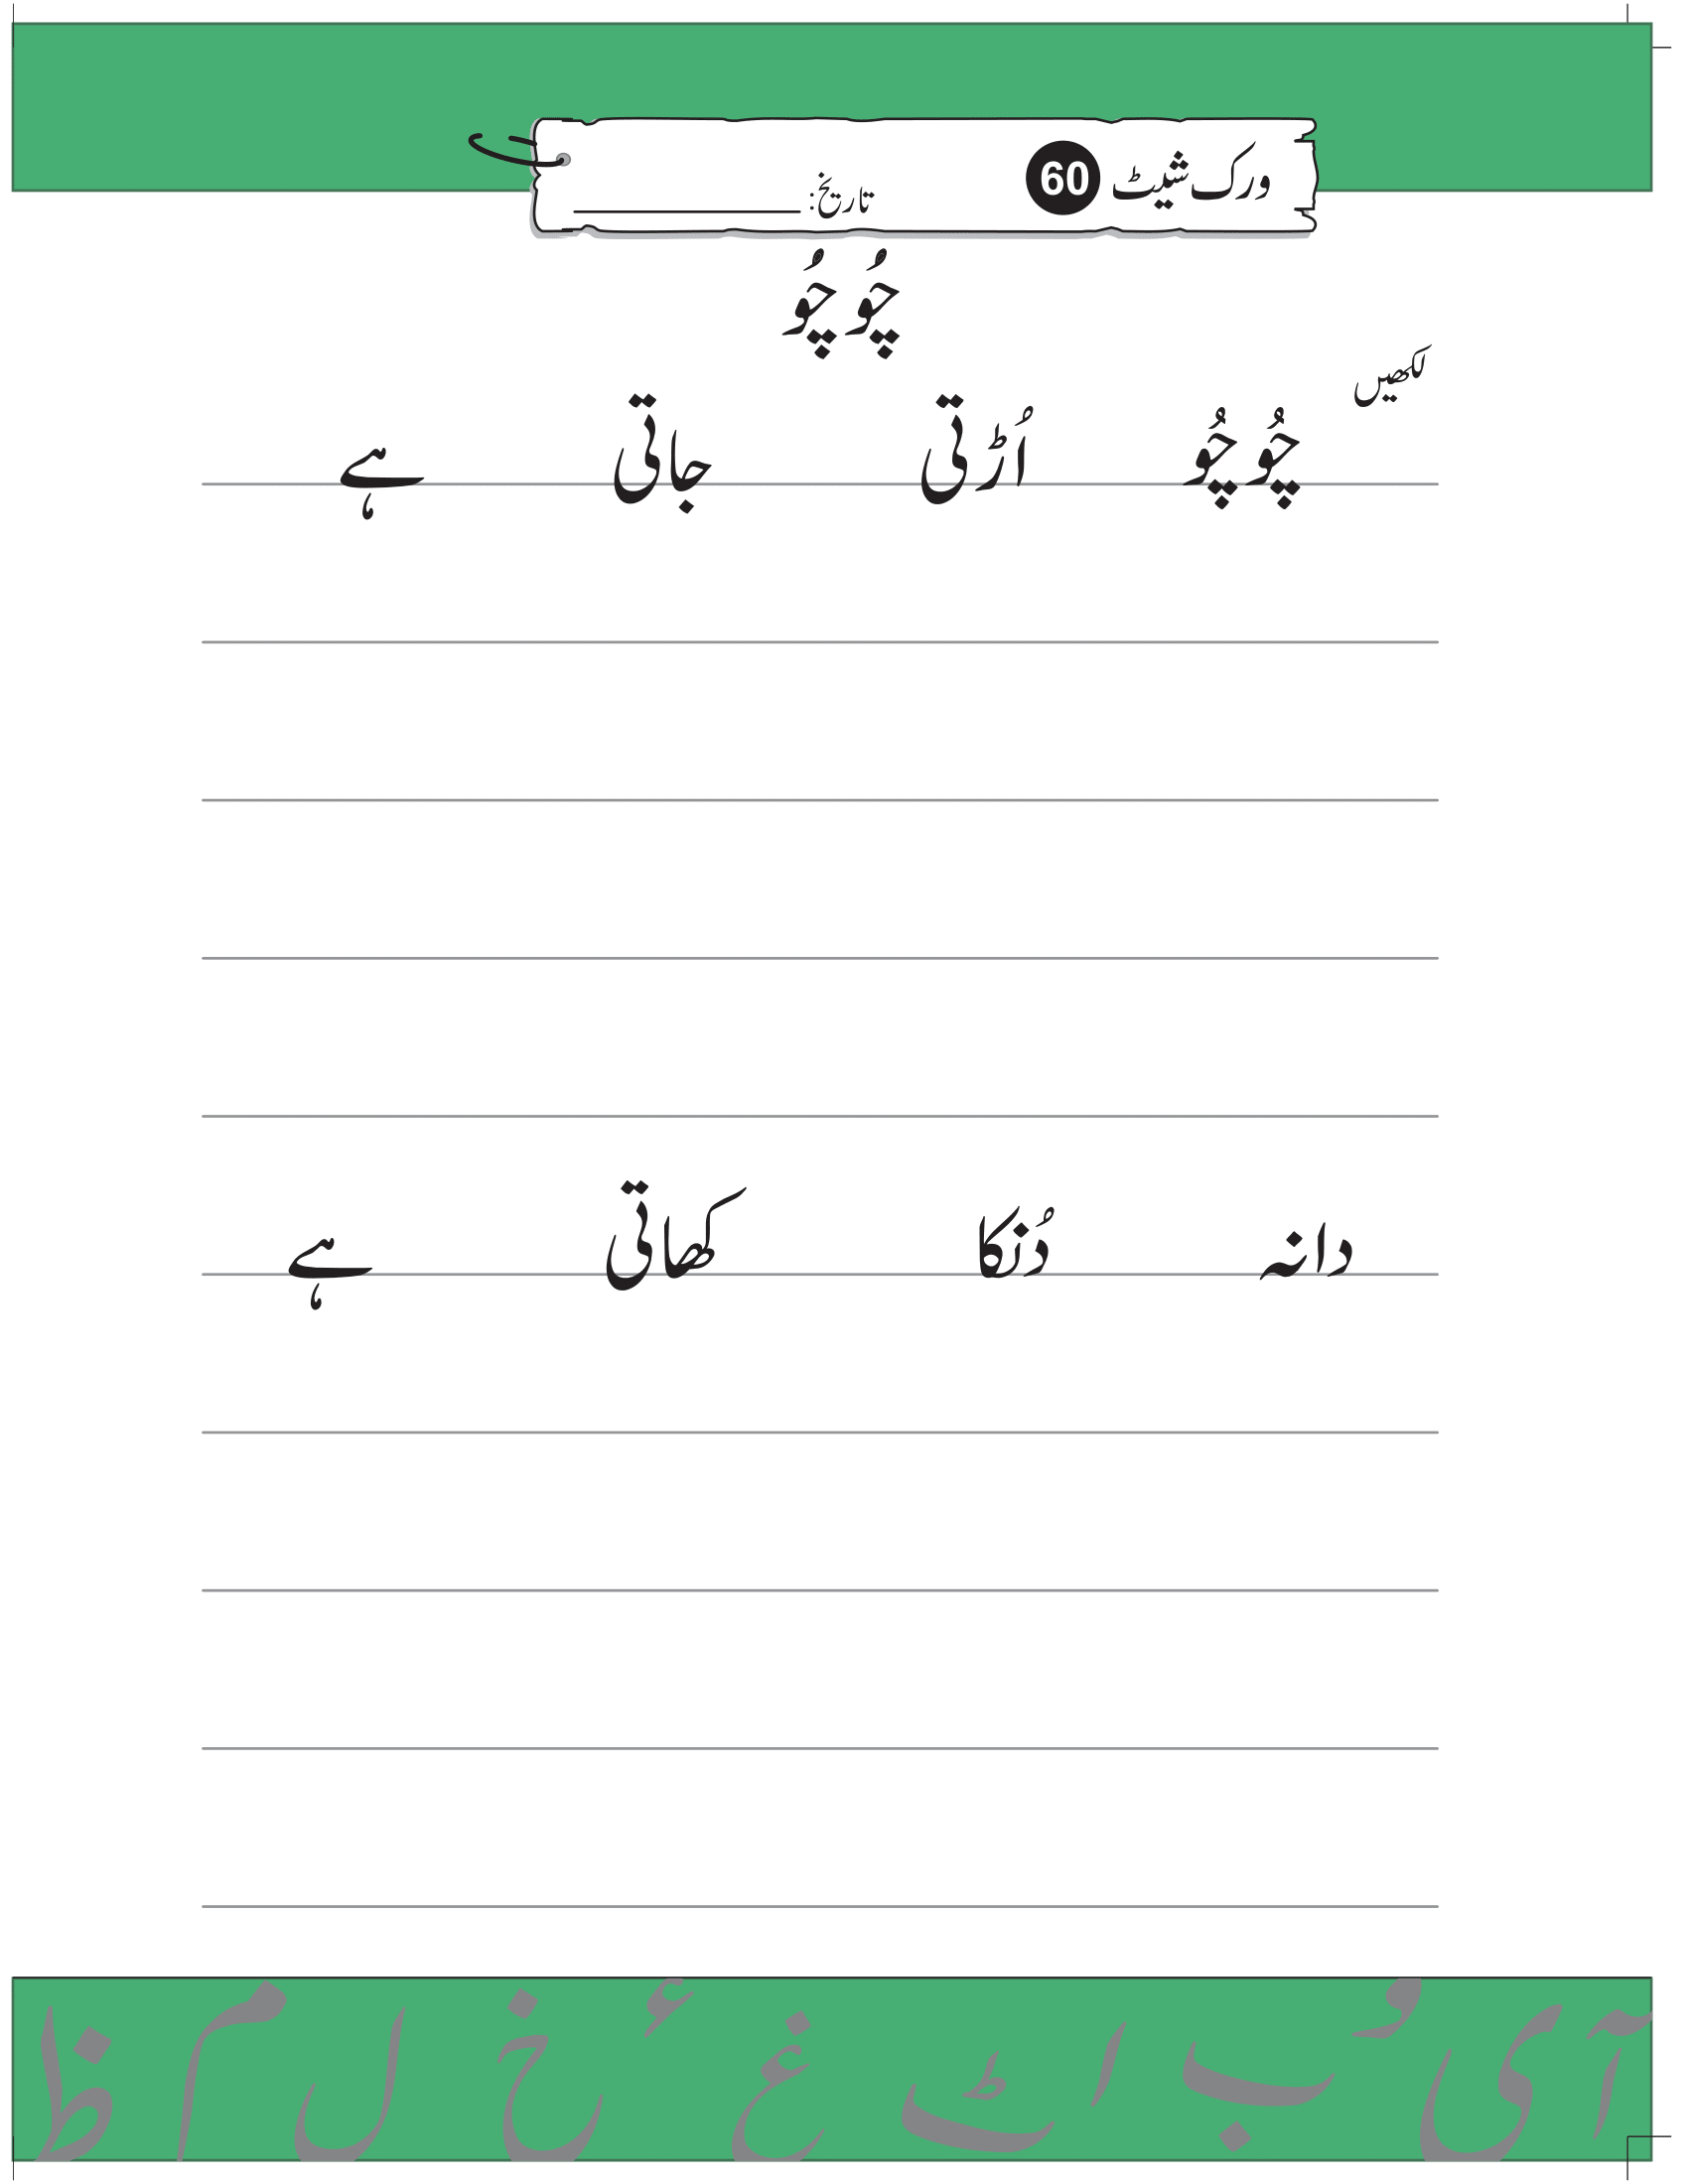 Urdu Worksheets for K.G Prep Pack 2 Kindergarten - Free Printable ...